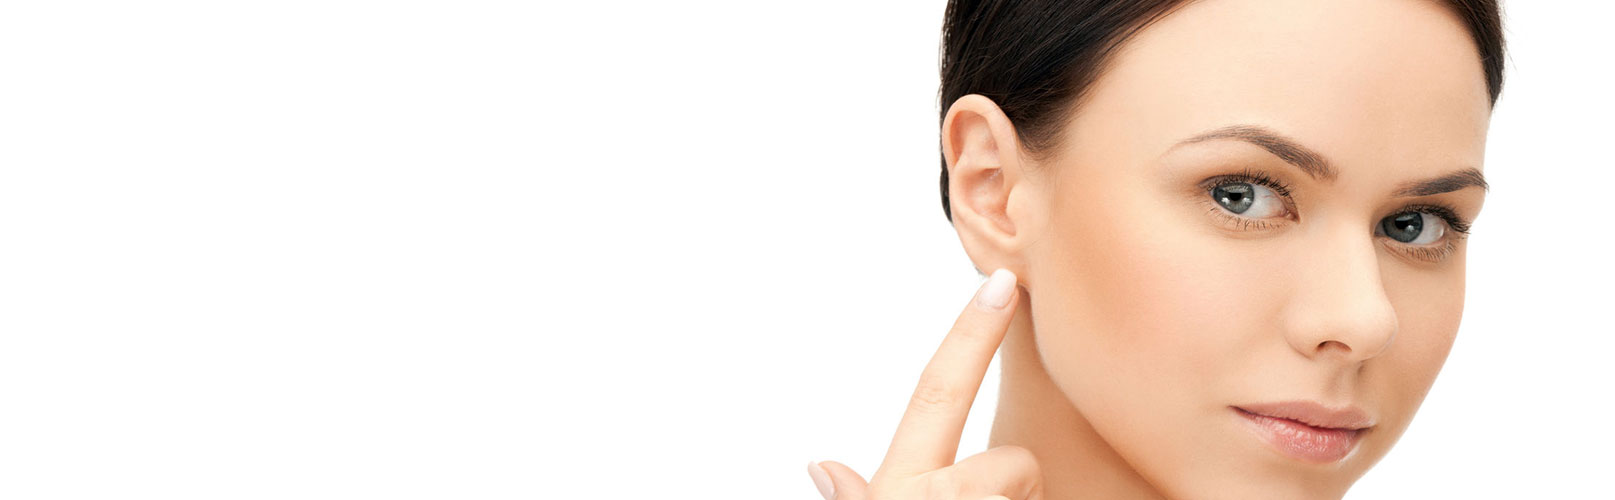 Corriger les anomalies des oreilles à Lyon - Dr Corniglion